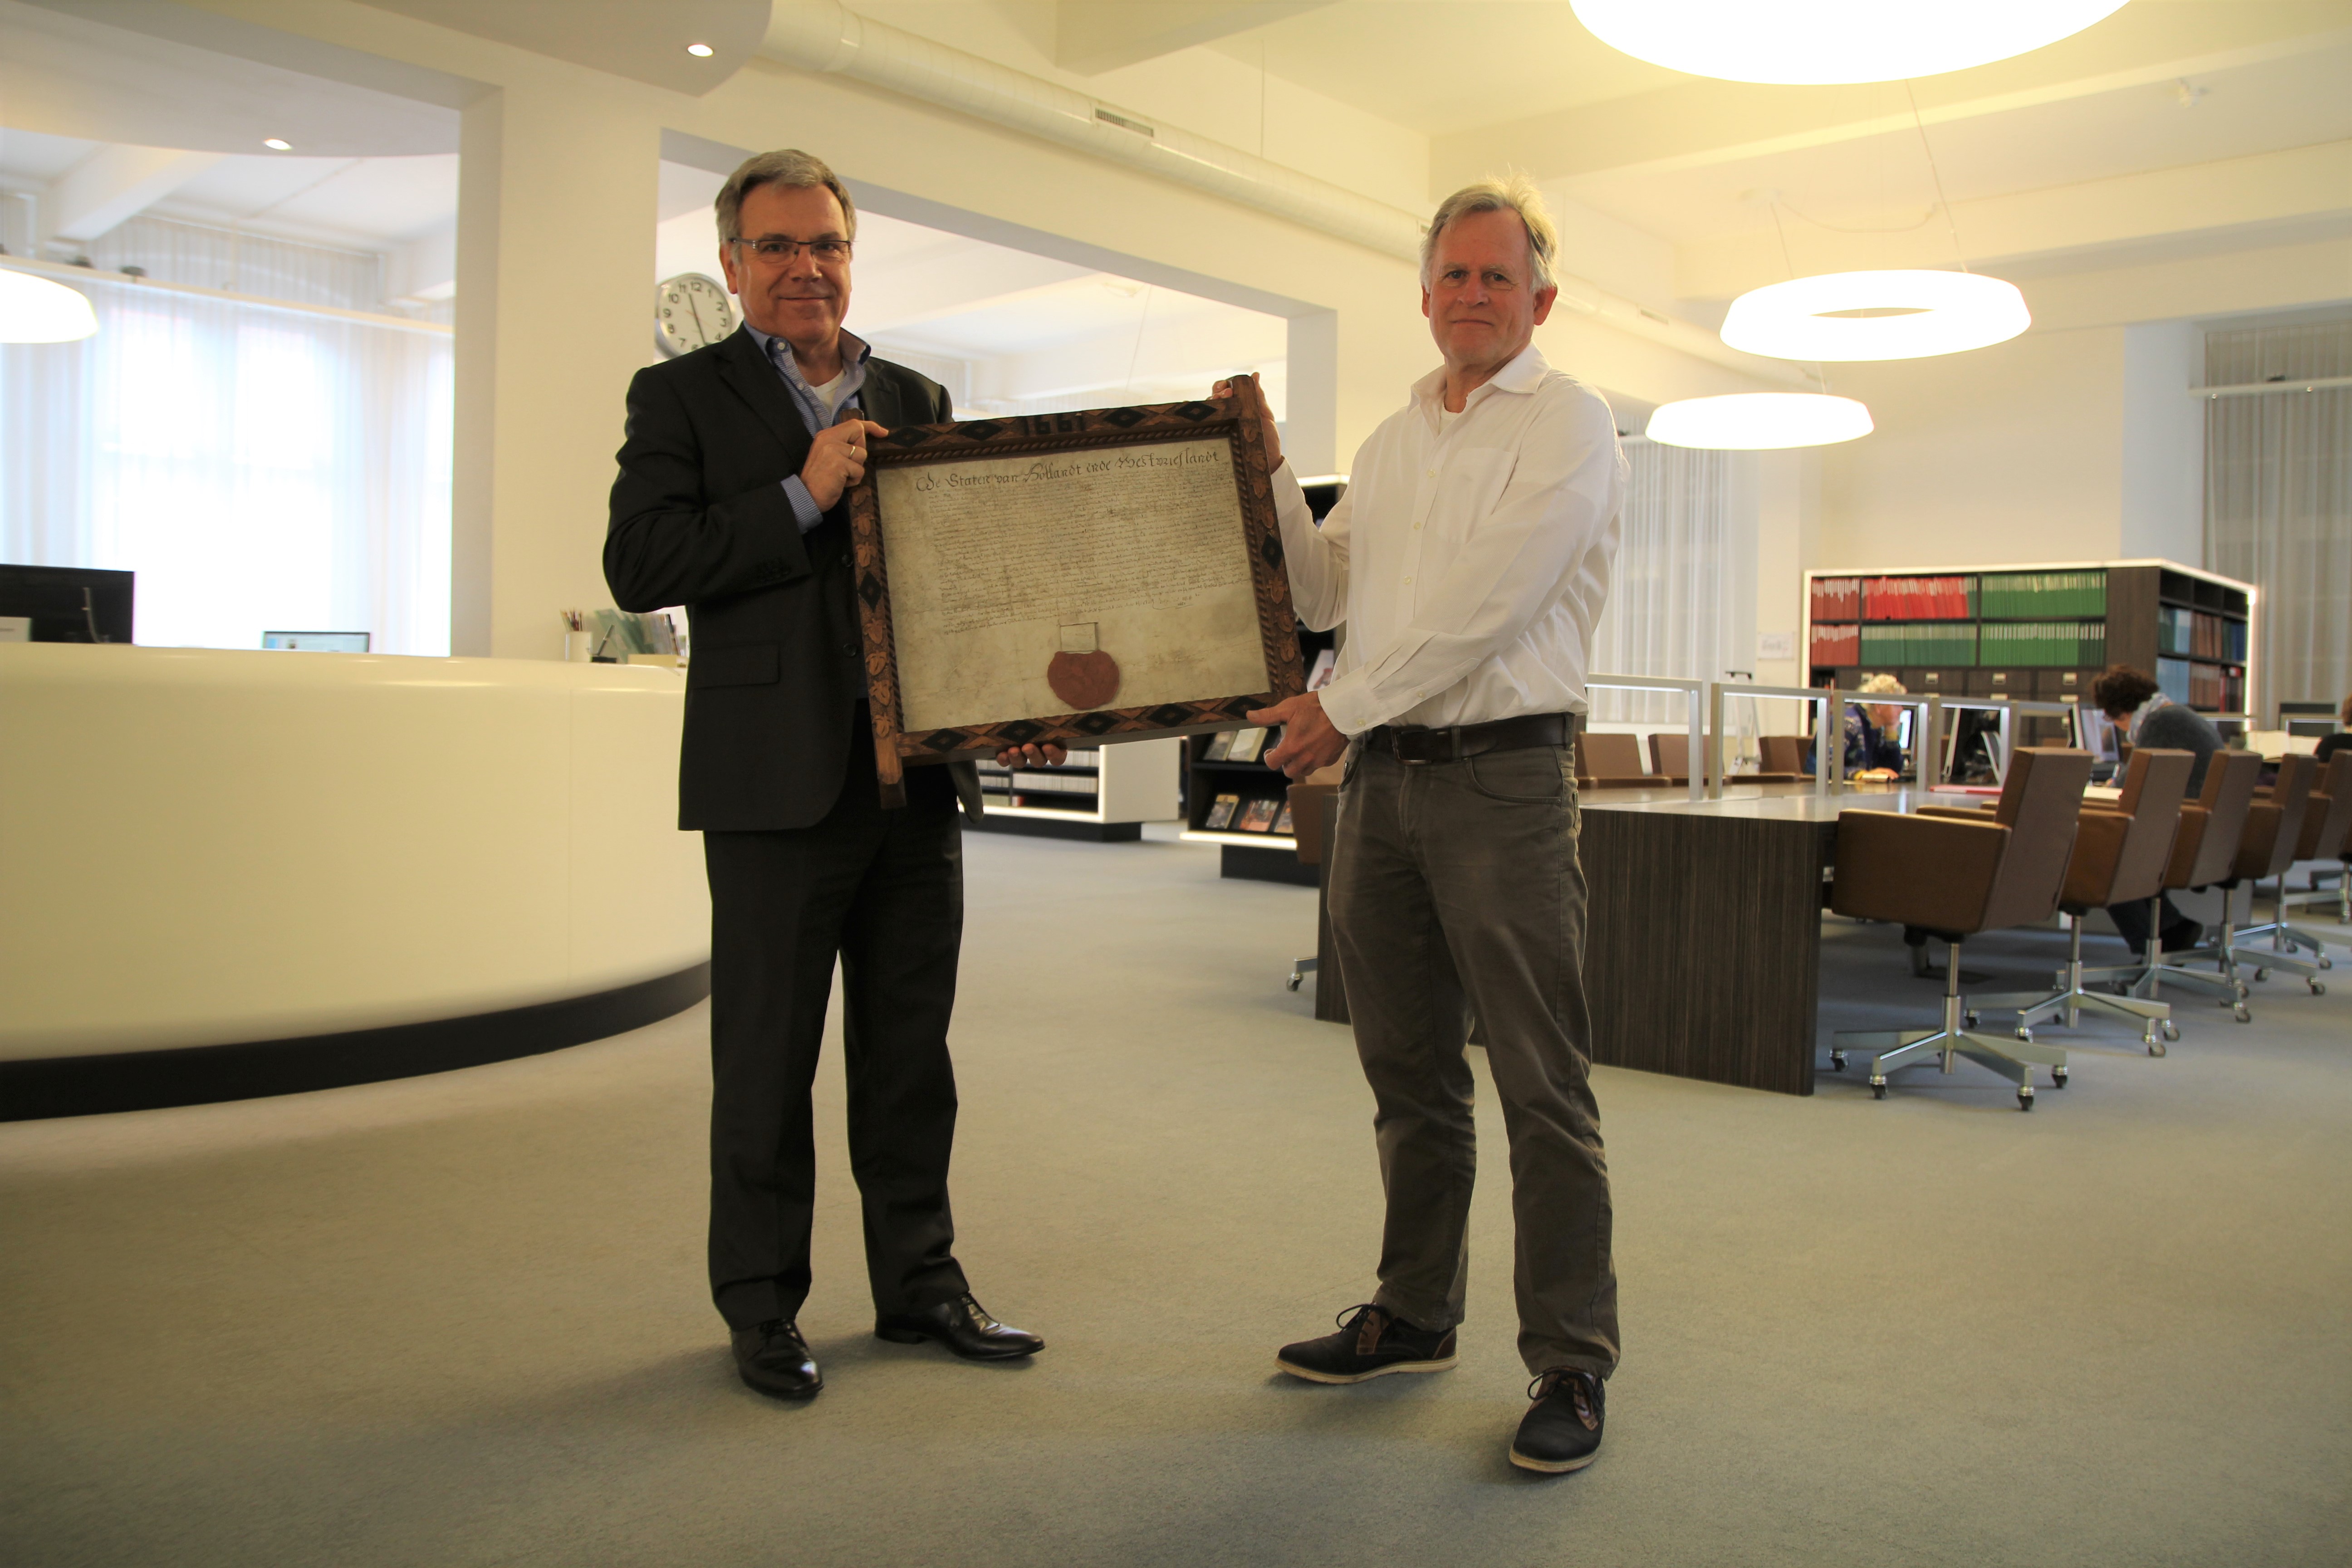  Arie Kaan overhandigd aan directeur Paul Post van het Regionaal Archief Alkmaar een zeventiende-eeuwse charter